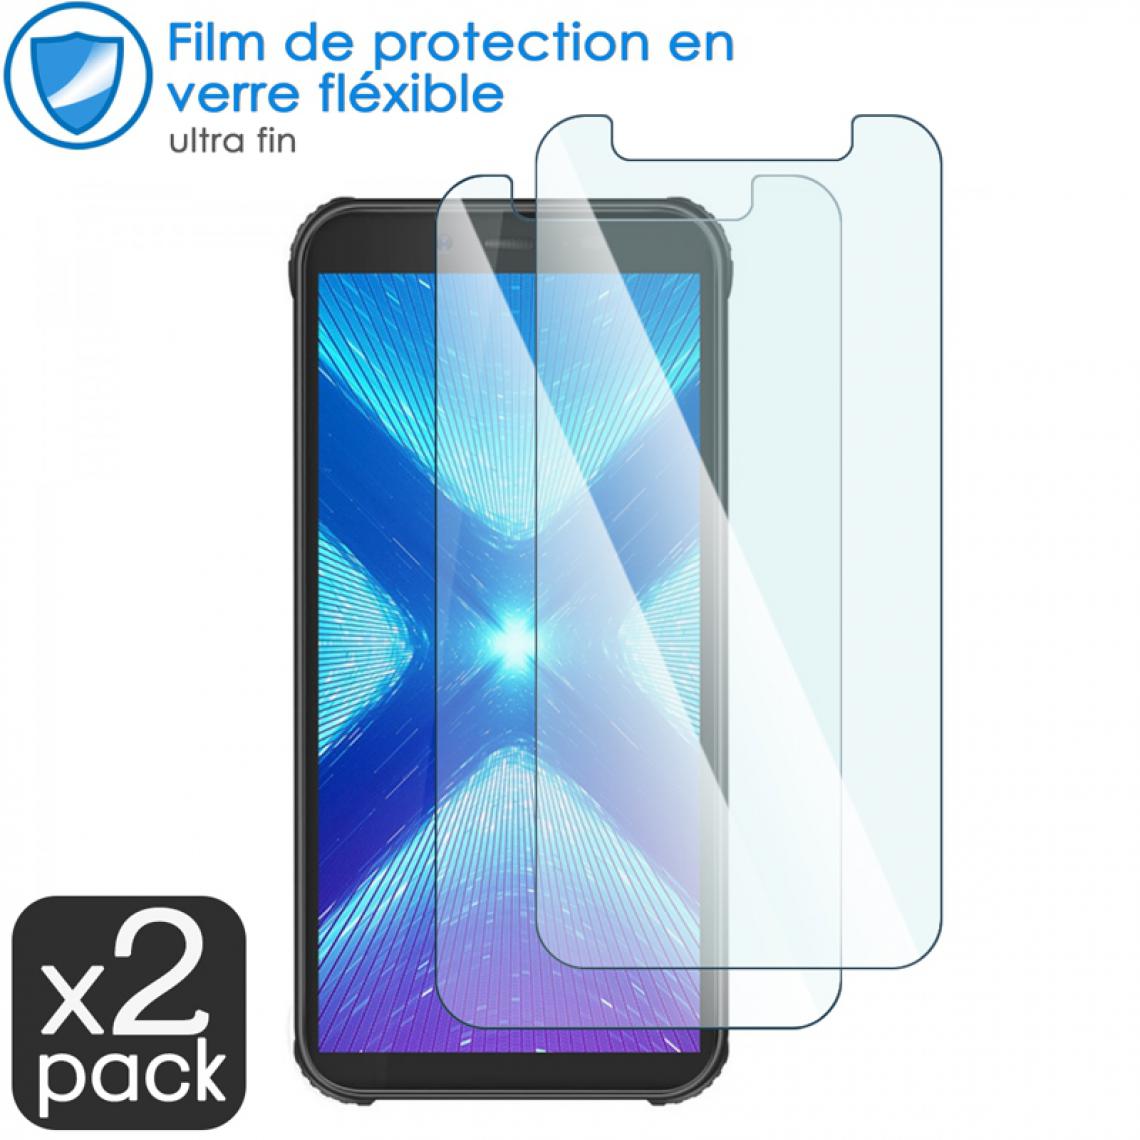 Karylax - Film de Protection d'écran en Verre Fléxible Dureté 9H pour Smartphone Blackview BV5500 Plus (Pack x2) - Protection écran smartphone